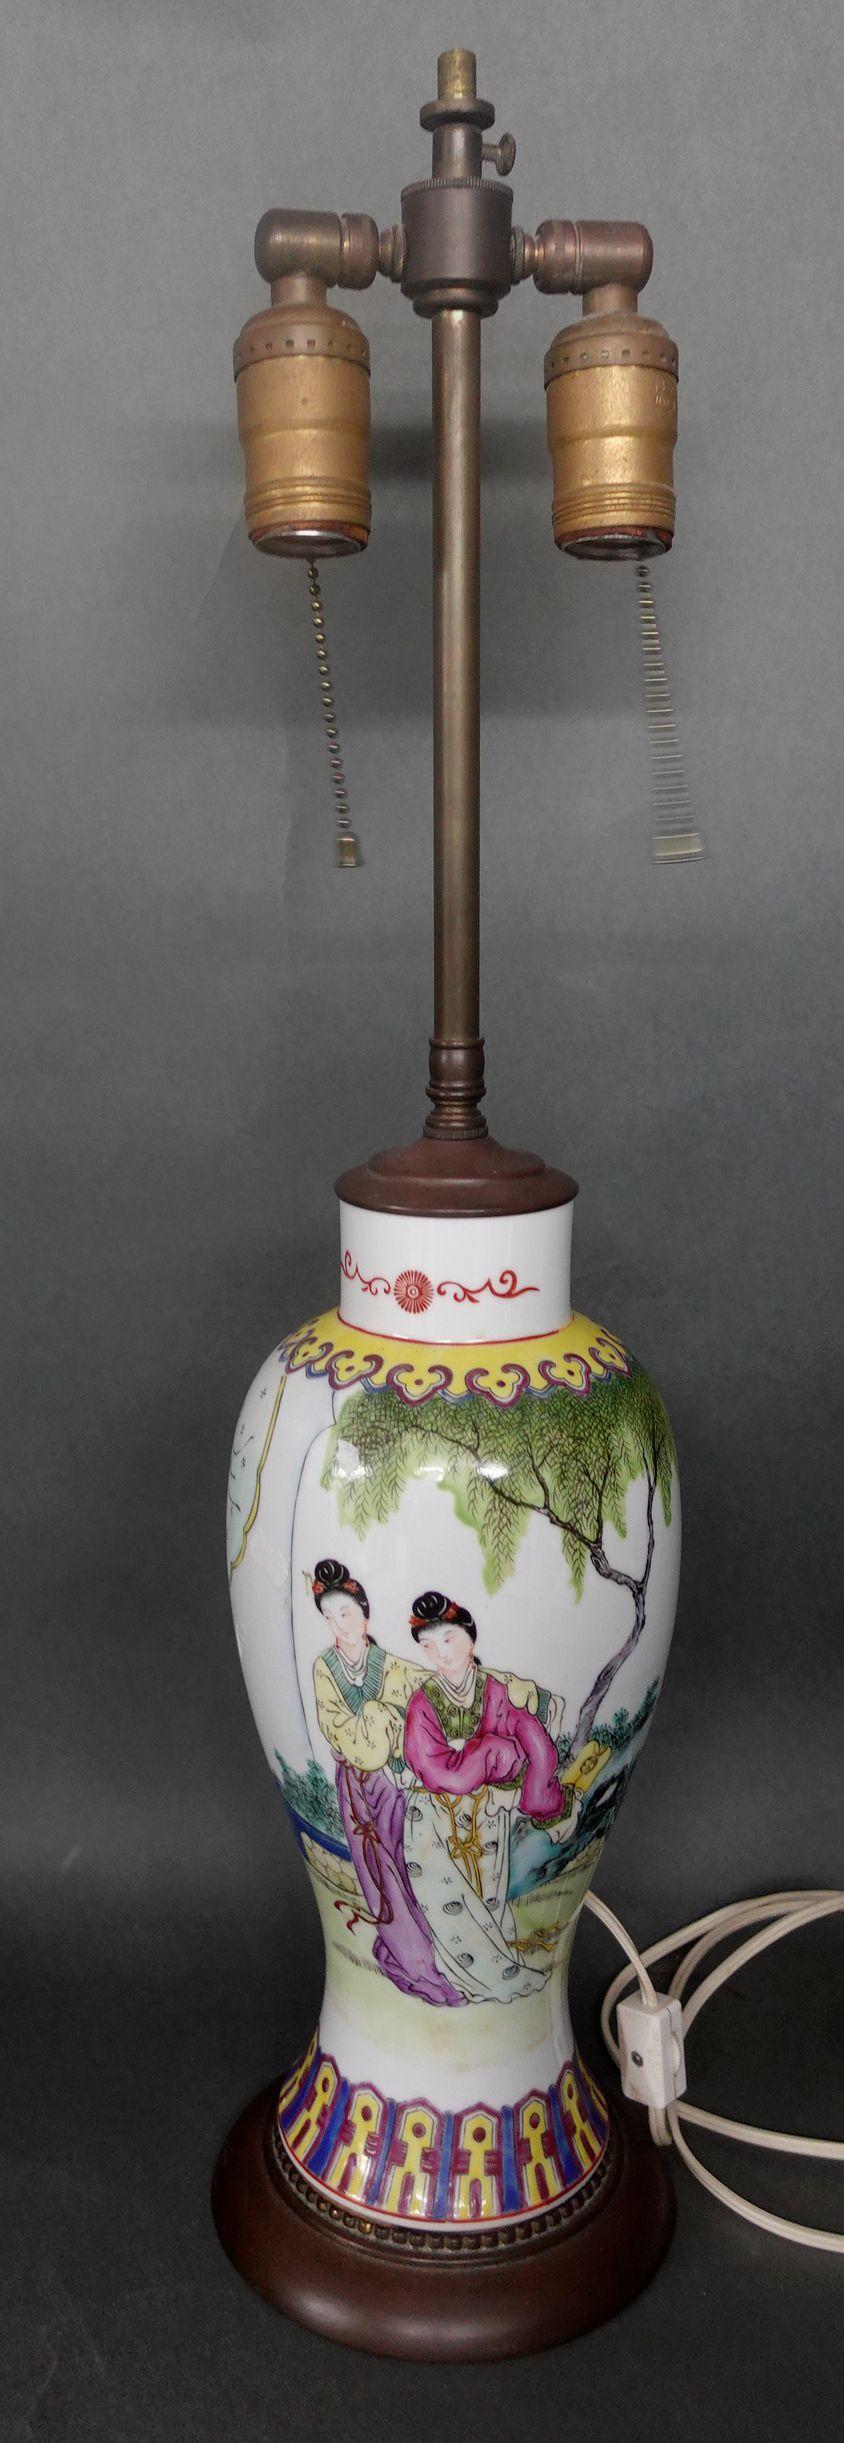 Chinesische Famille-Rose-Vase als Lampe montiert
Gesamthöhe: 24,5